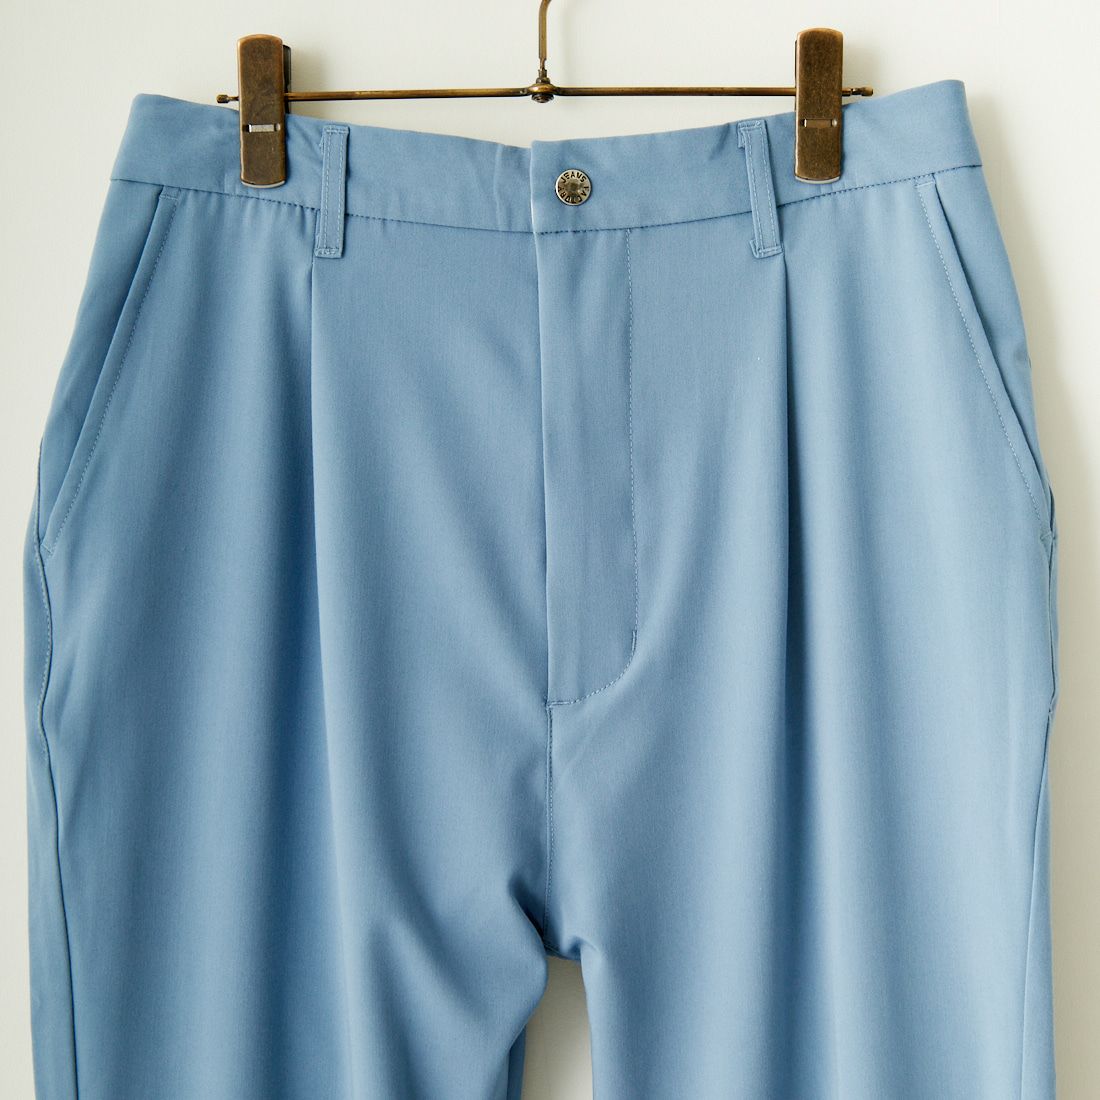 Jeans Factory Clothes [ジーンズファクトリークローズ] 2WAYドライギャバストレッチワイドテーパード [JFC-241-007] 05 BLUE